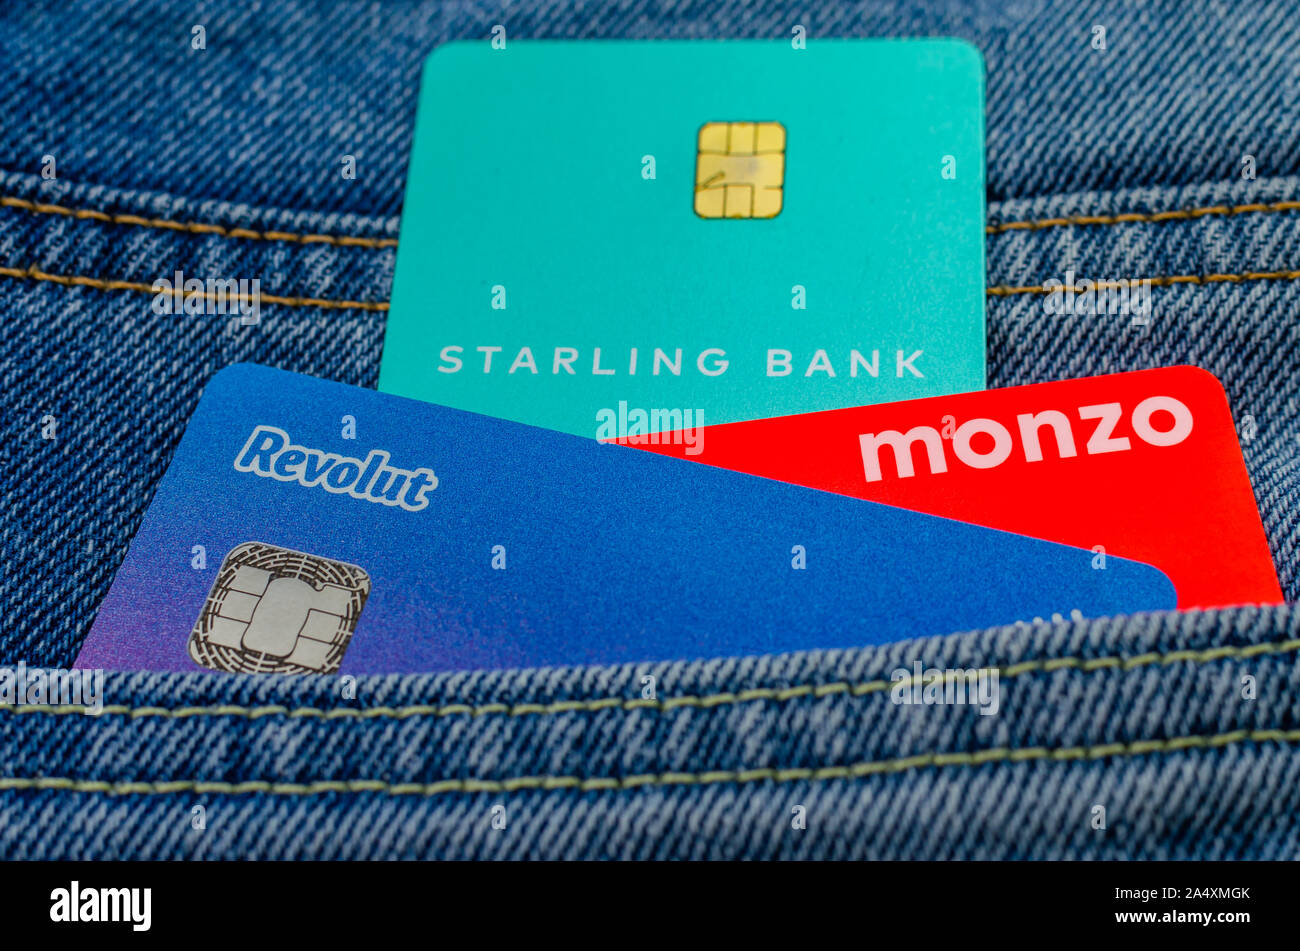 L'Monzo, Revolut Starling et cartes bancaires coller à partir de la même poche de jeans. Concept pour un concours sur l'aileron, tech. Banque D'Images